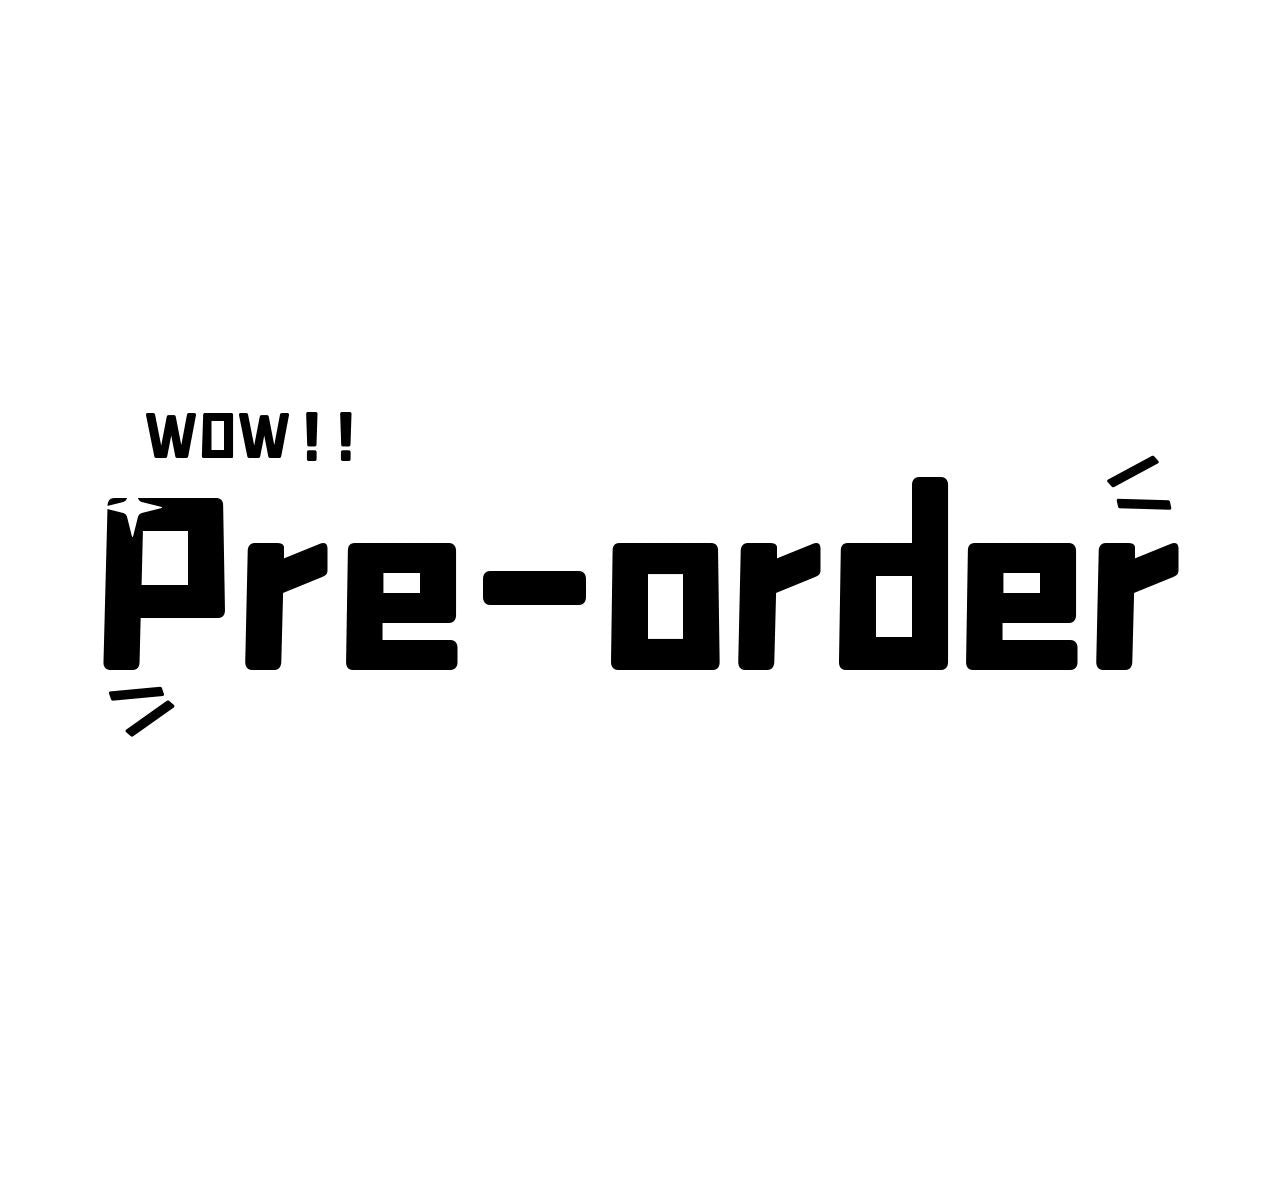 Pre-order